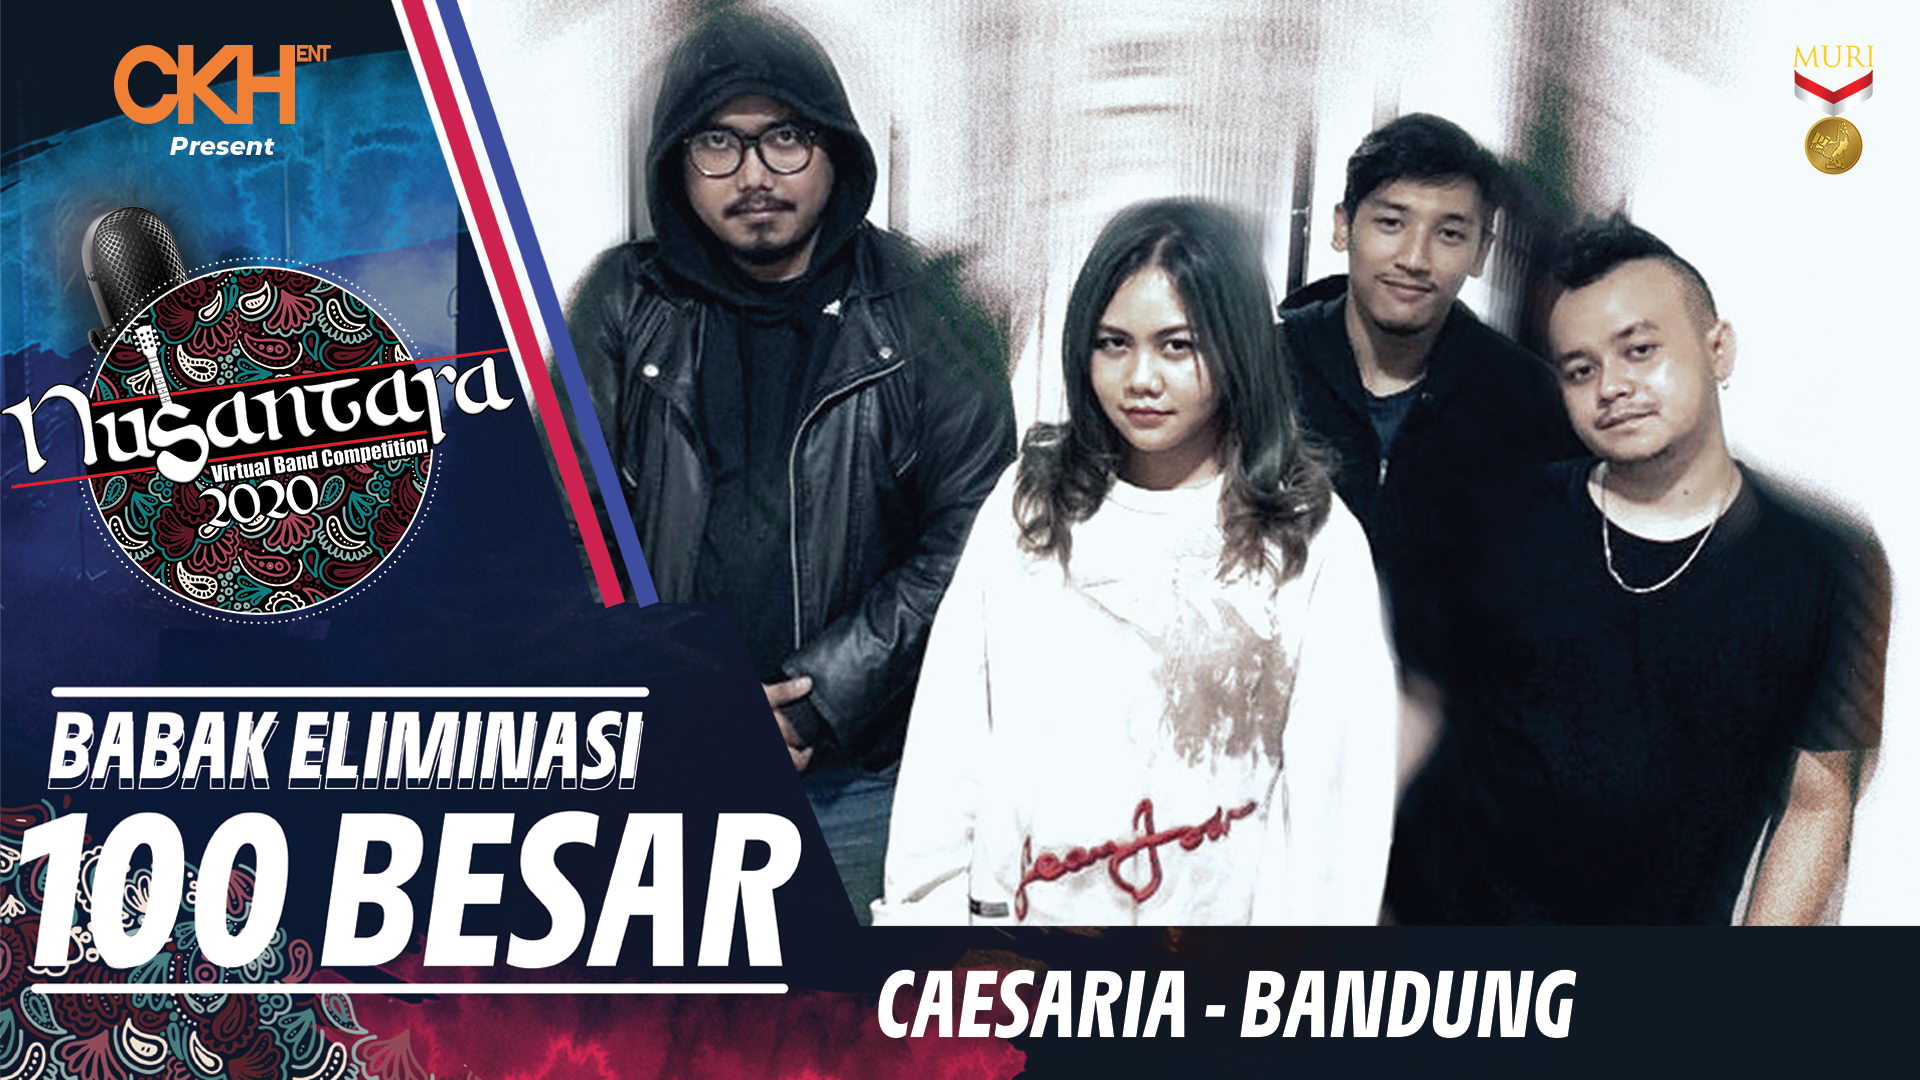 Caesaria - Eliminasi 100 Besar Nusantara Virtual Band Competition